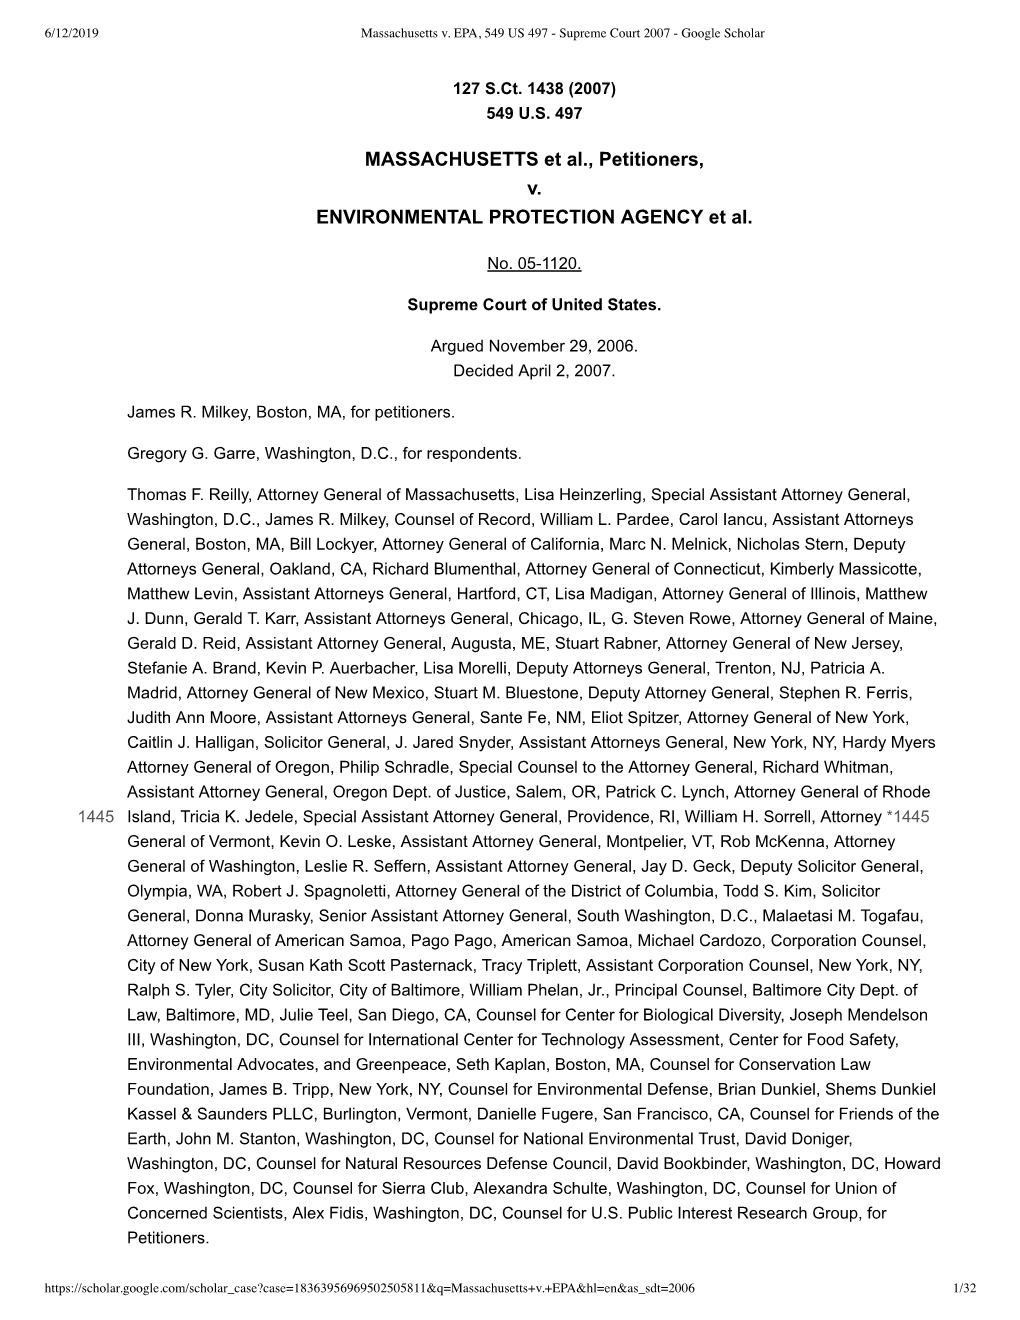 Massachusetts V. EPA, 549 US 497 - Supreme Court 2007 - Google Scholar